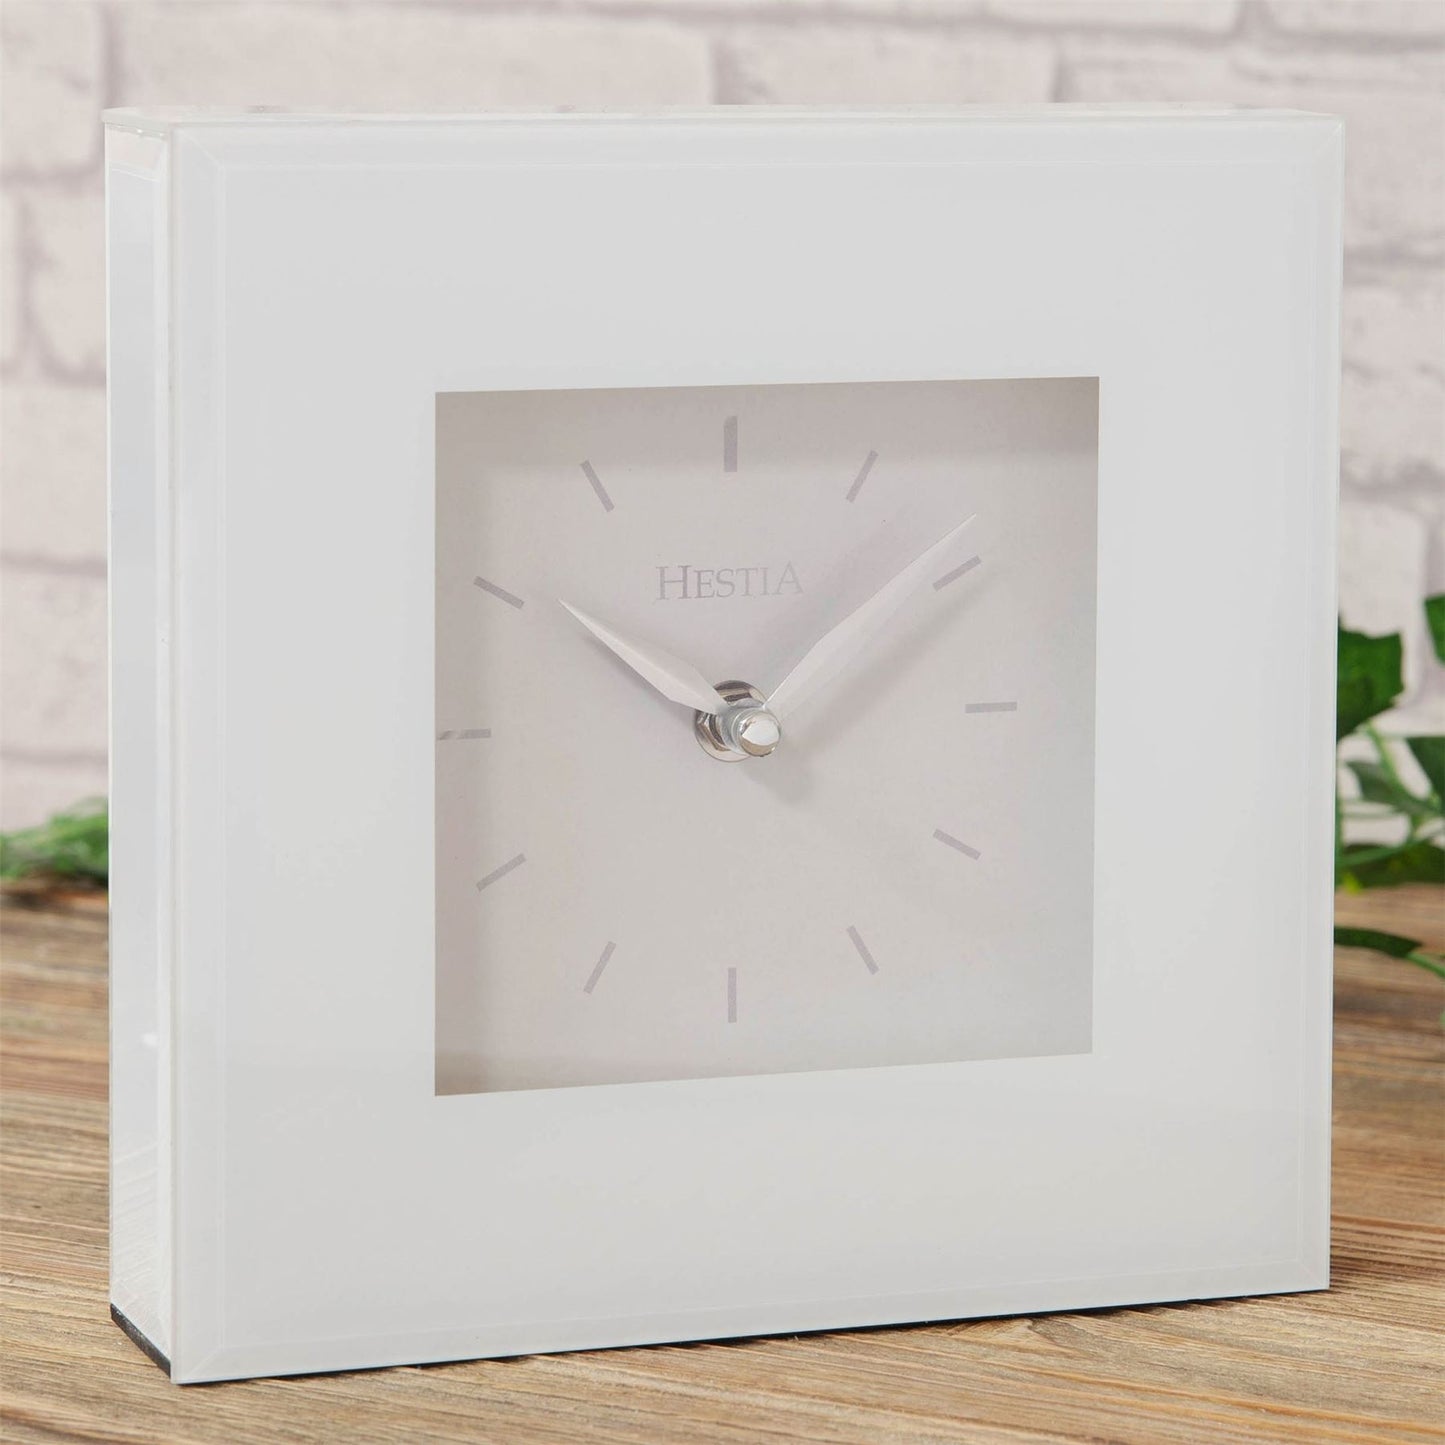 Hestia White Glass Mantel Clock